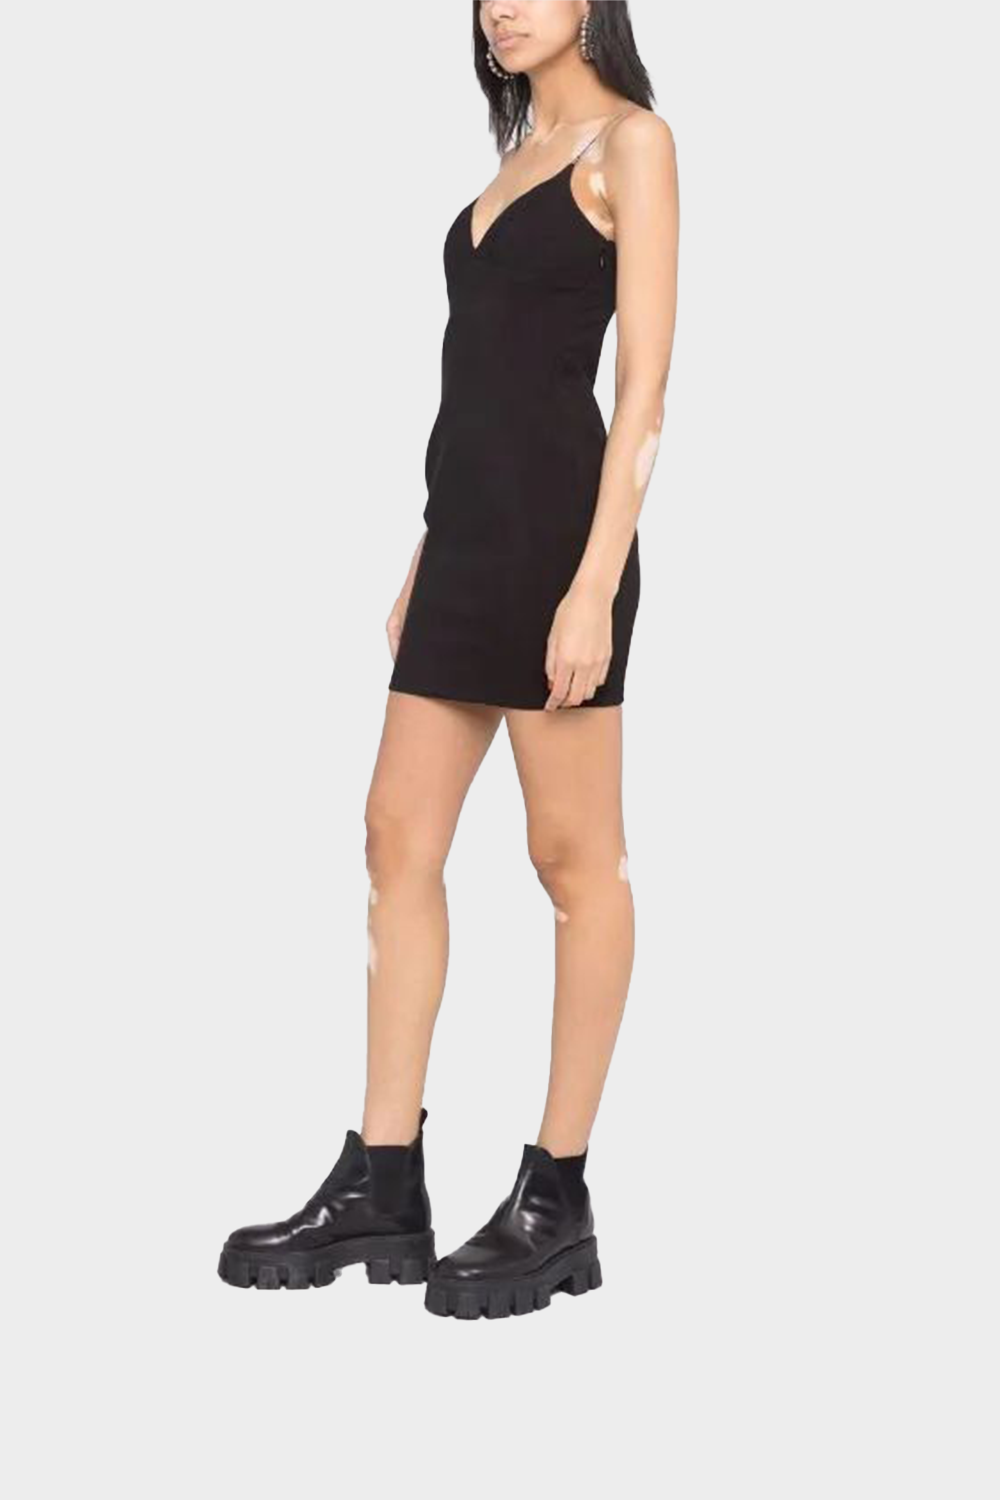 שמלה קצרה לנשים כתפיות ספגטי VERSACE Vendome online | ונדום .